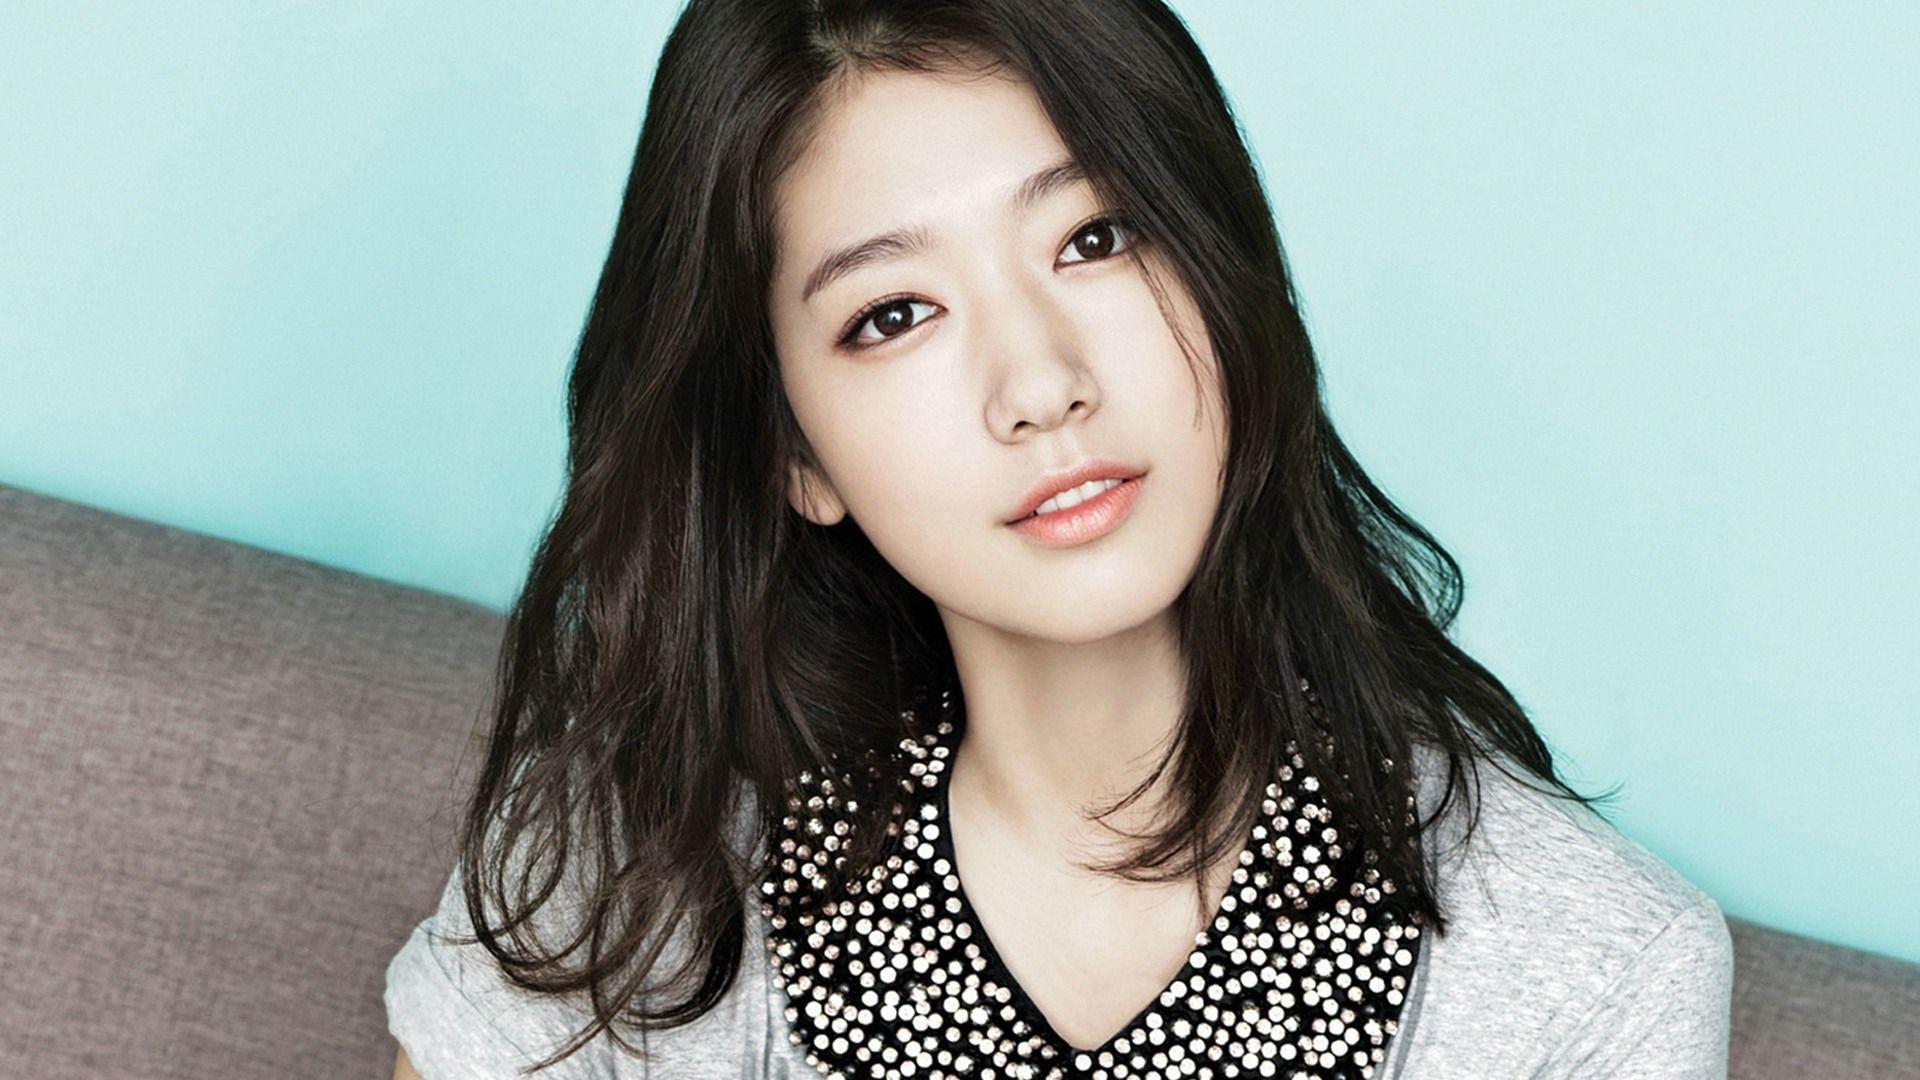 Park Shin Hye Actress Girl Korean Ce. Wallpaper